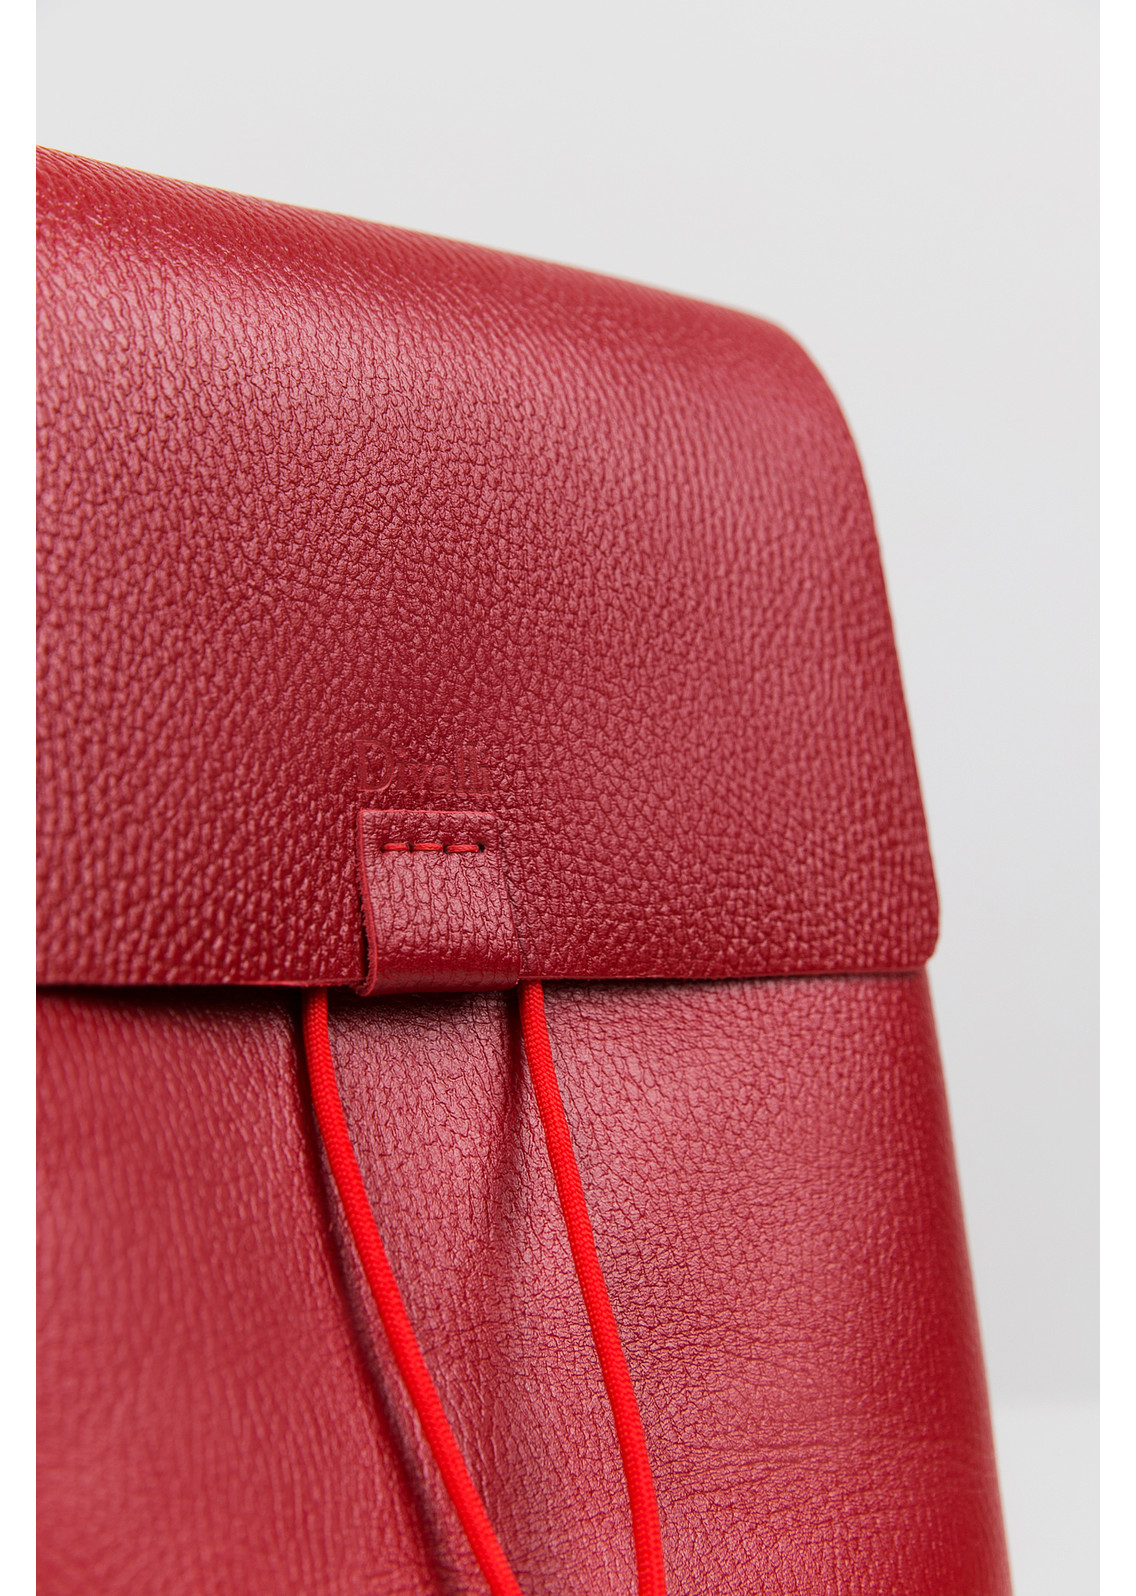 Женский рюкзак из натуральной кожи красный B003 ruby grain